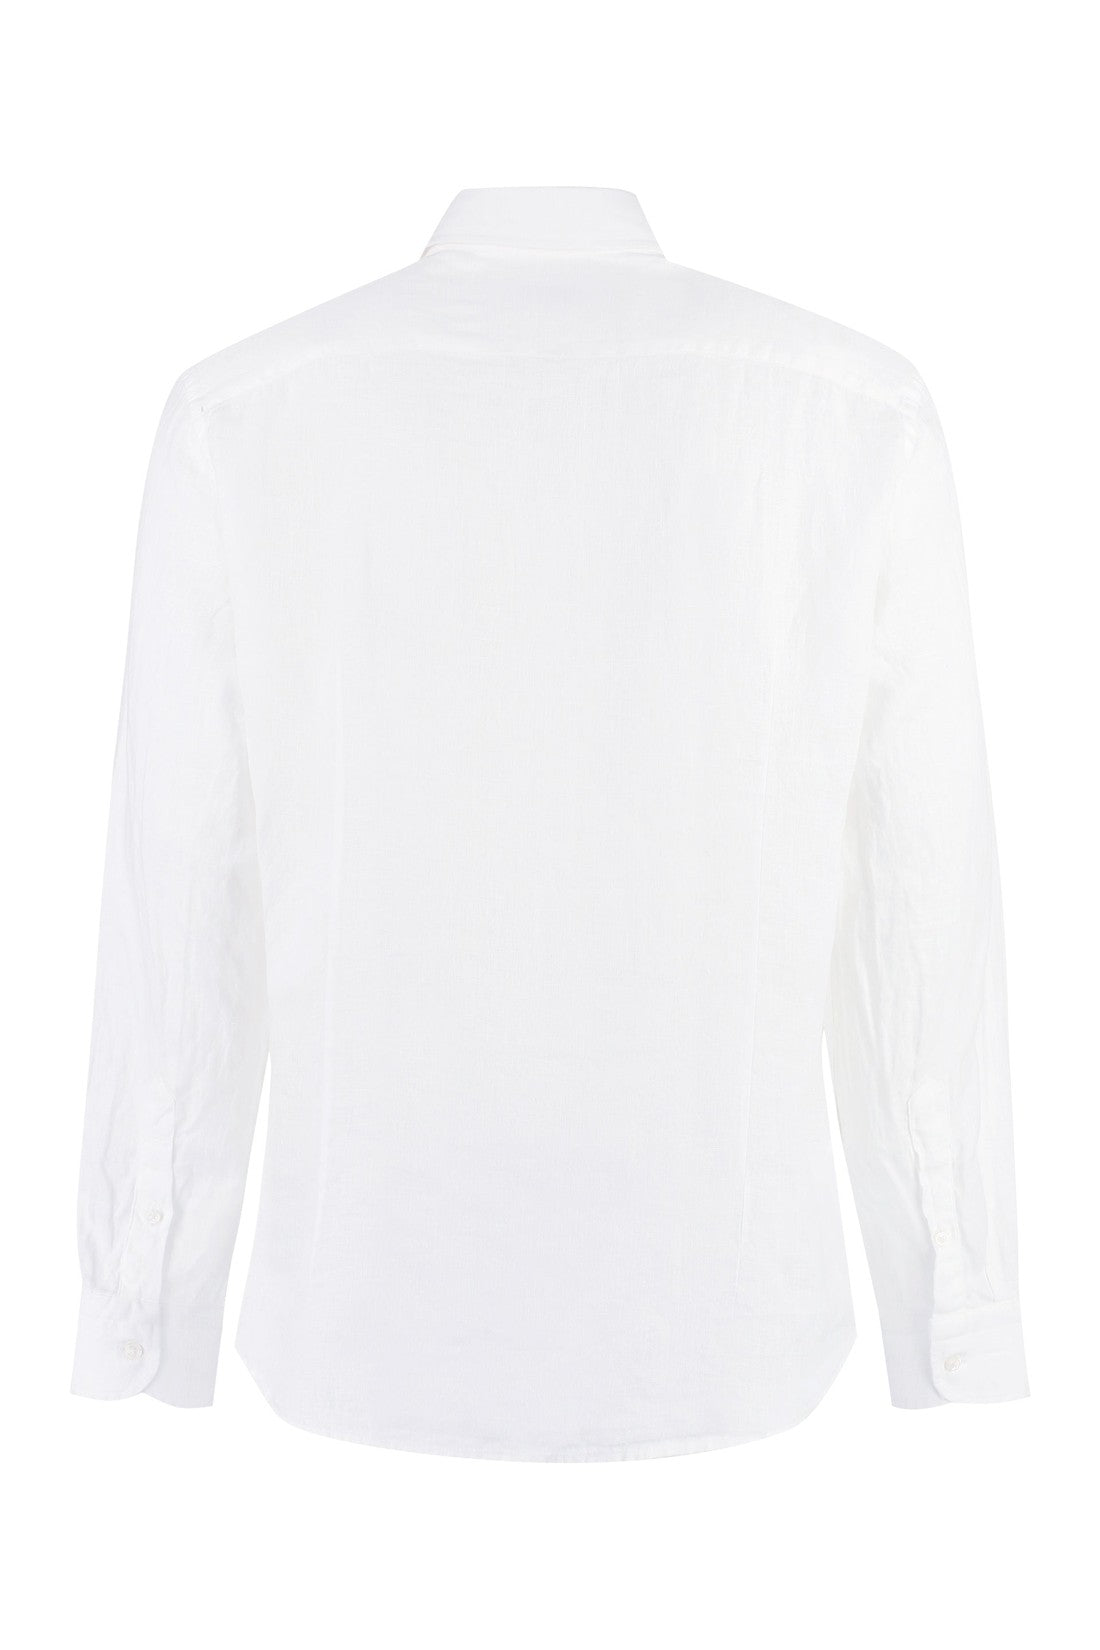 BASTONCINO-OUTLET-SALE-Linen shirt-ARCHIVIST